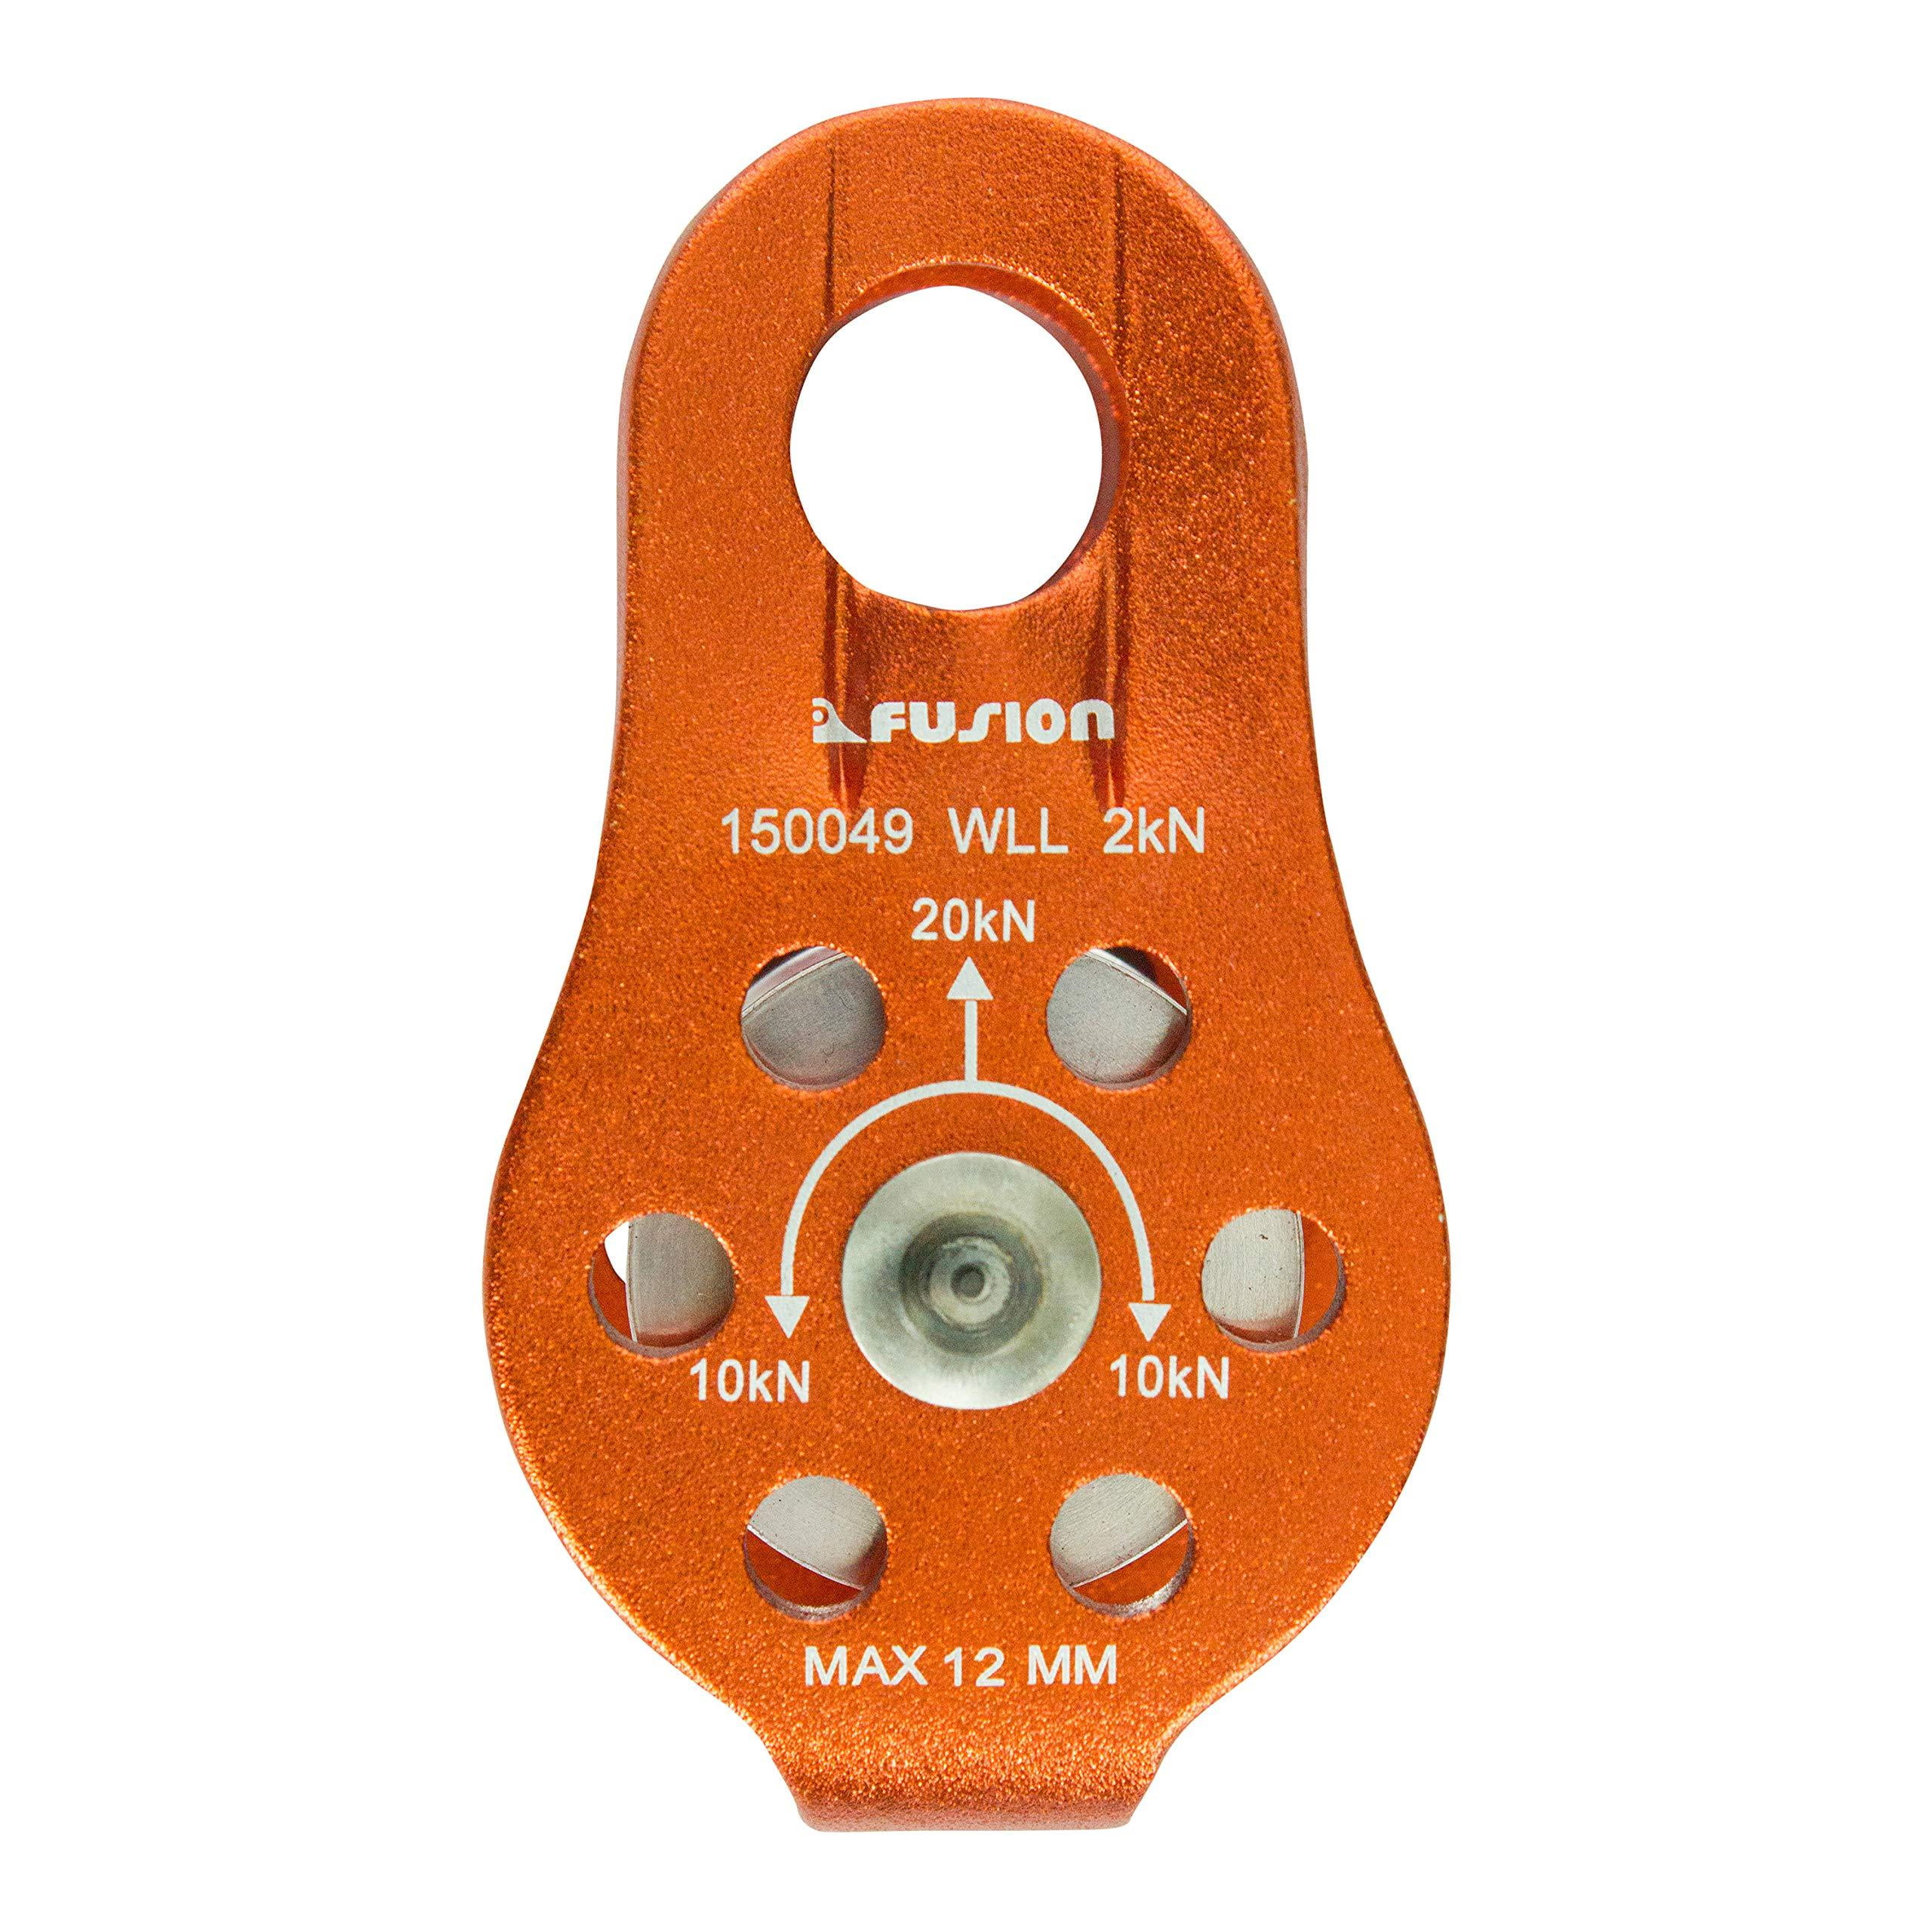 Fusion Climb Nuro Fixed Side Aluminum Pulley Orange 20KN 